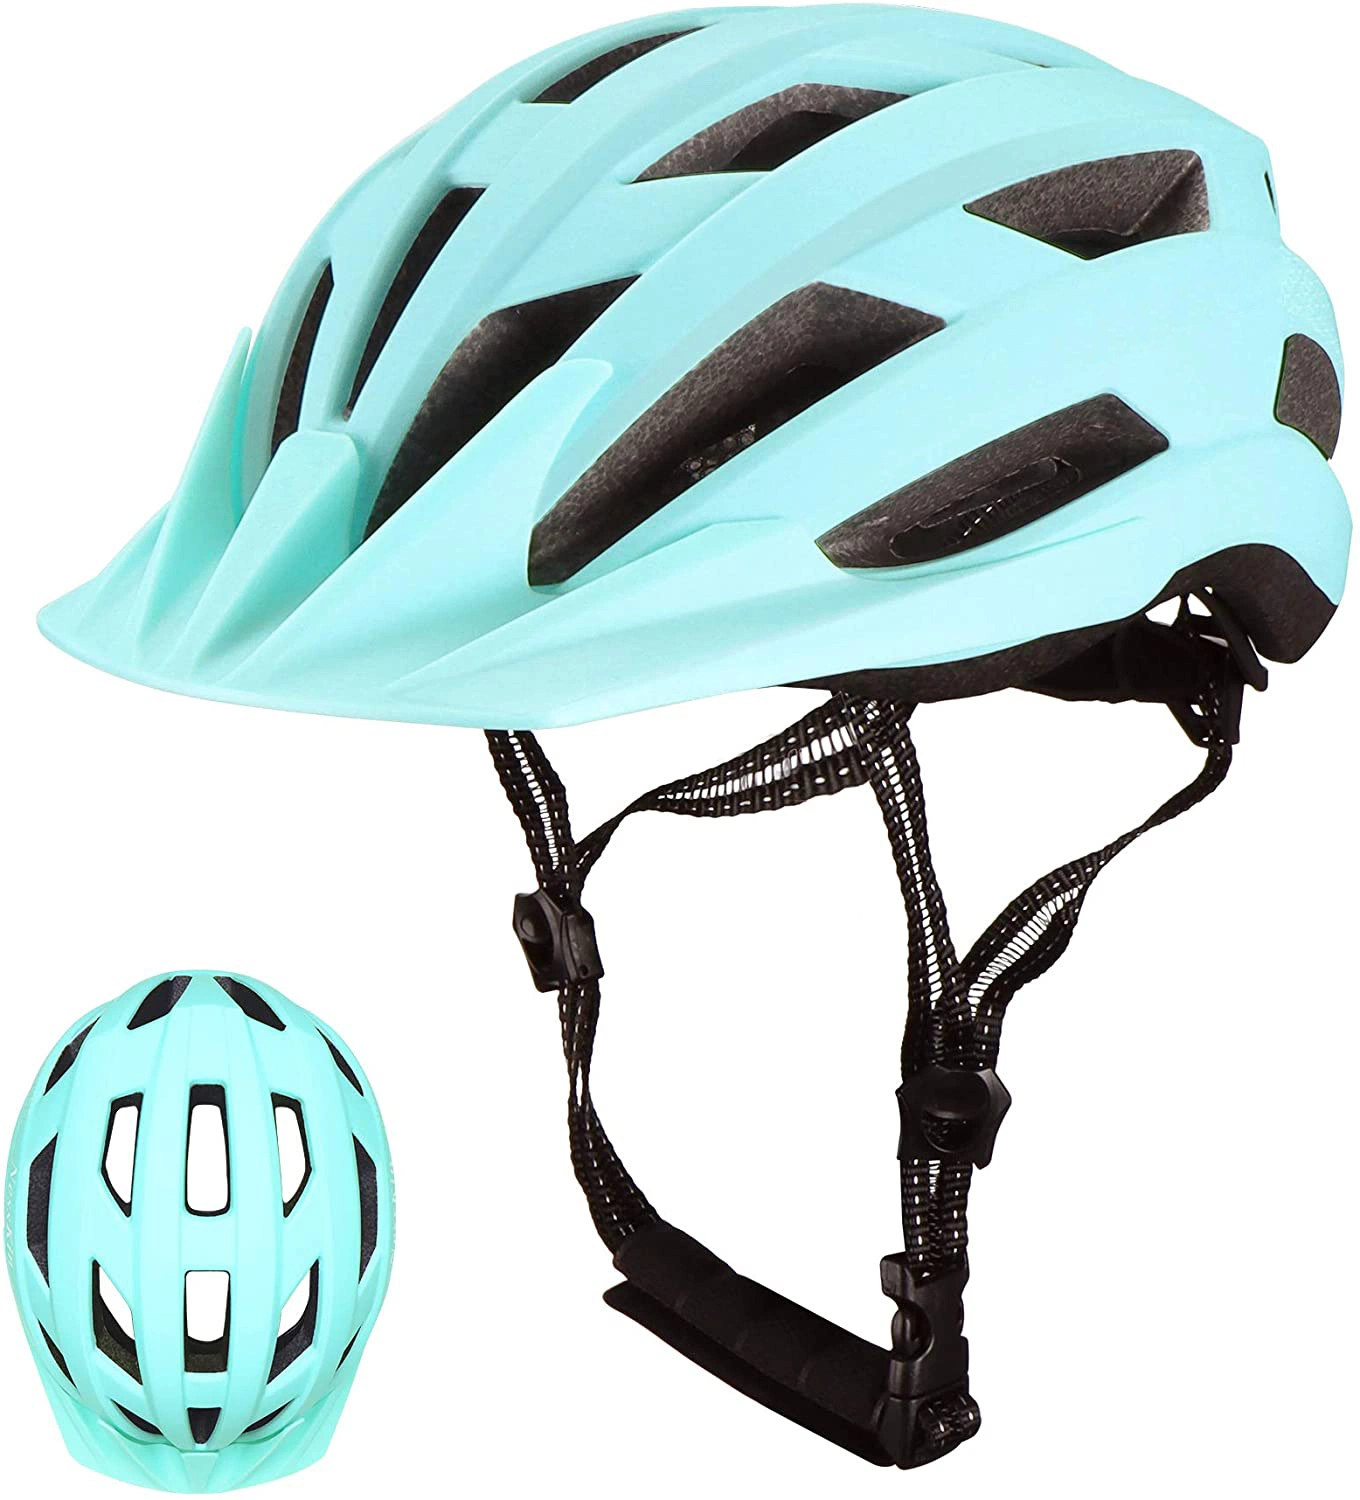 De alta calidad personalizado de protección de la cabeza deportes al aire libre Moto Casco casco de bicicleta de carretera ajustable para adulto Teen